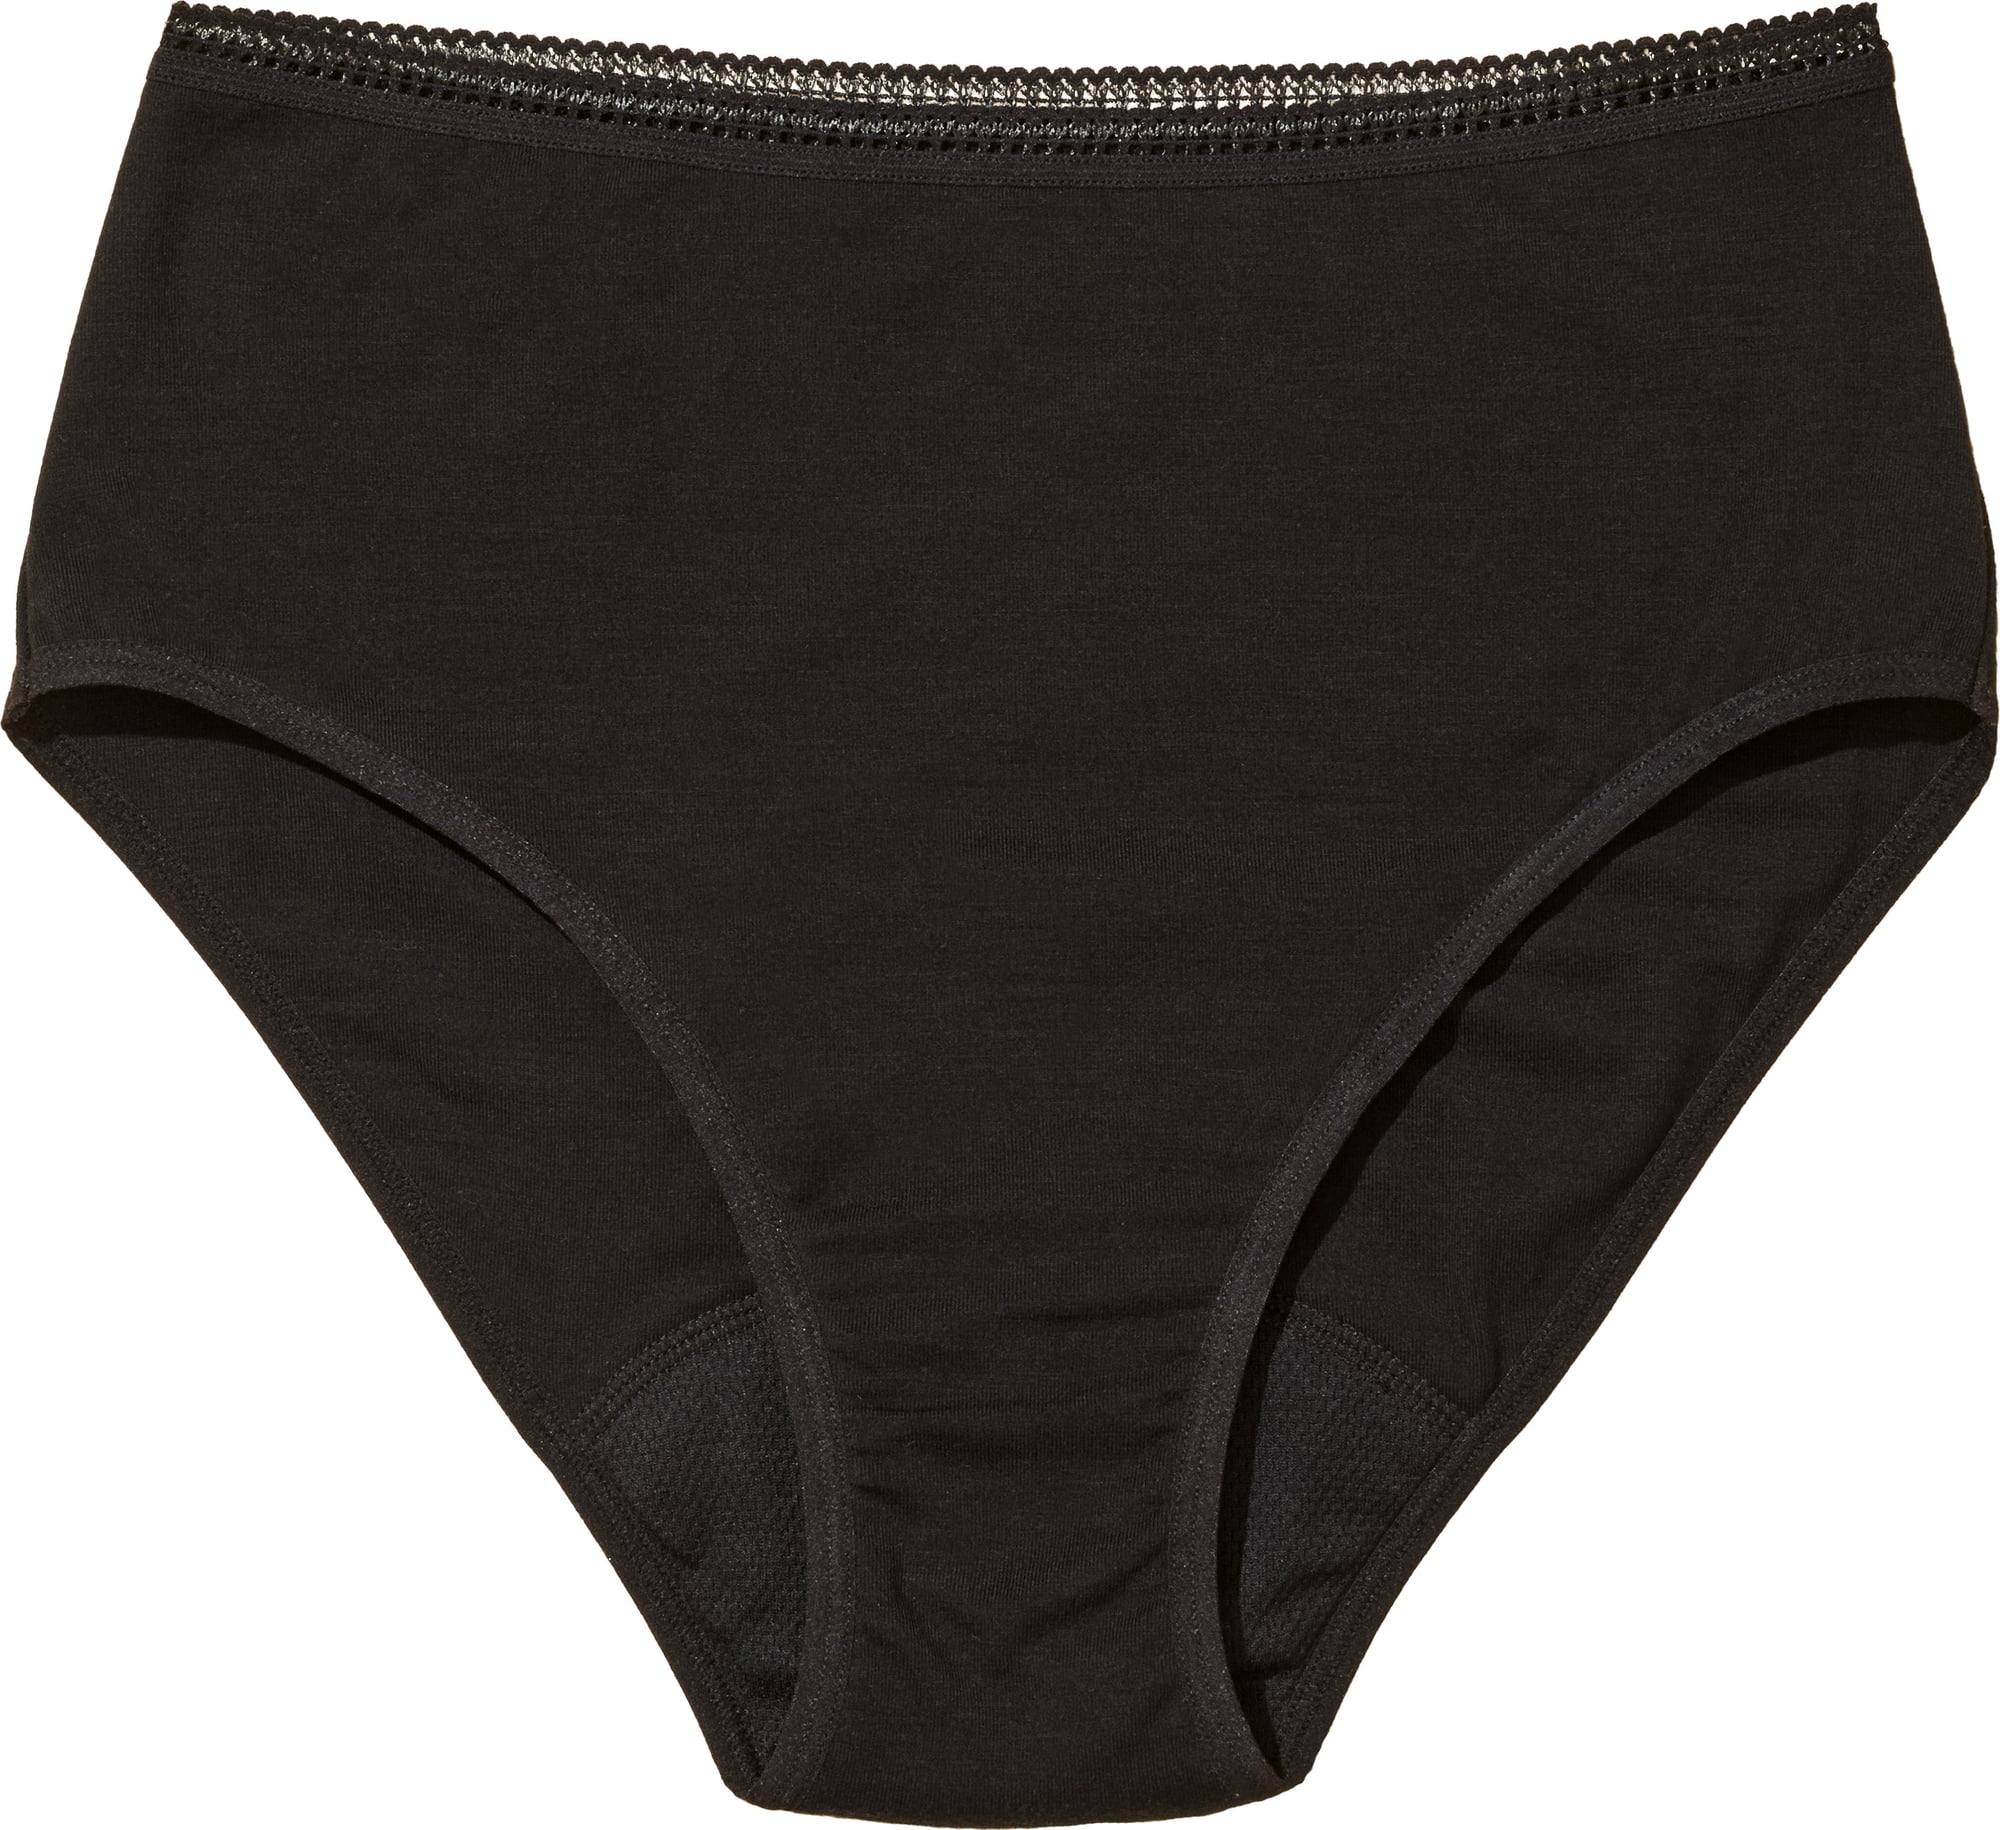 High-Waist Period Proof Underwear